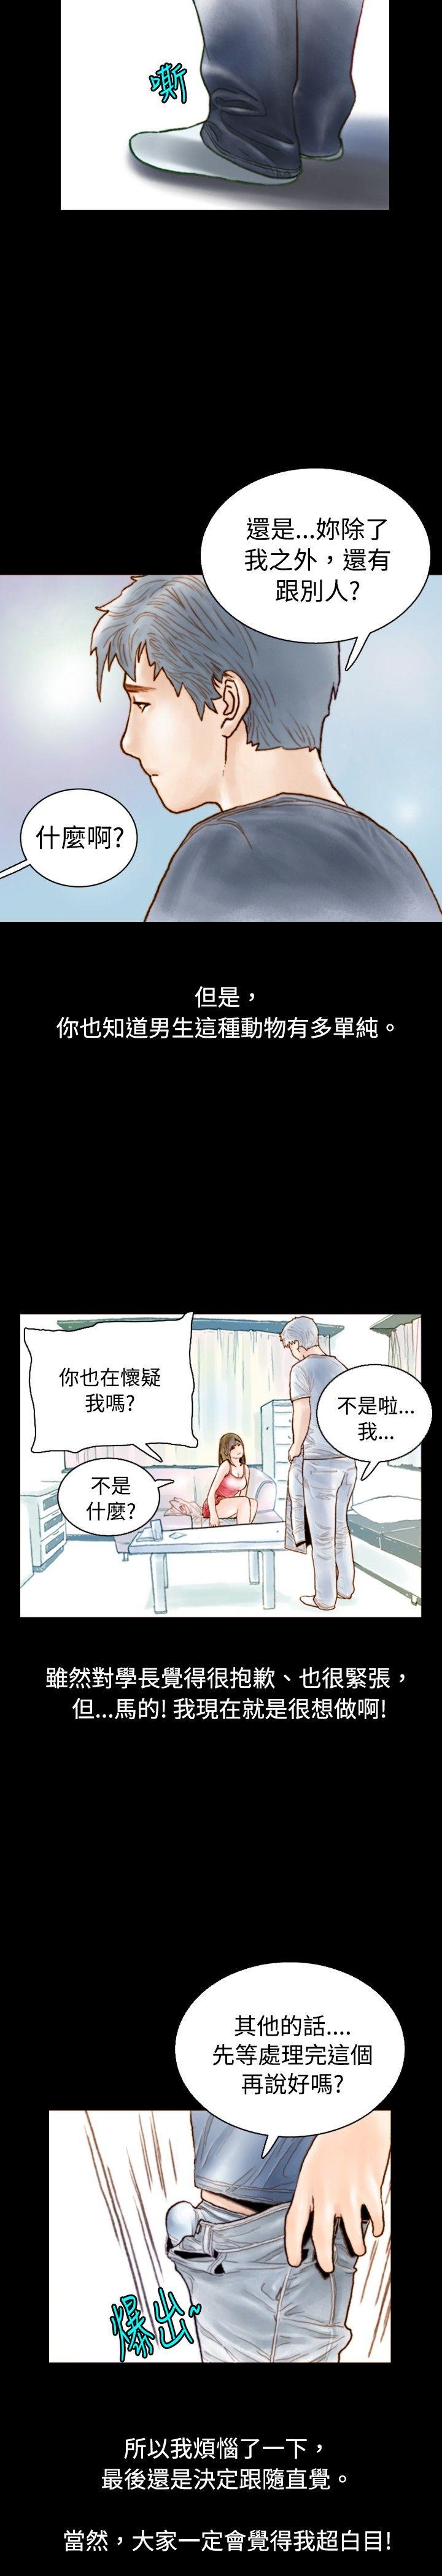 秘密Story  危险关係(中) 漫画图片11.jpg